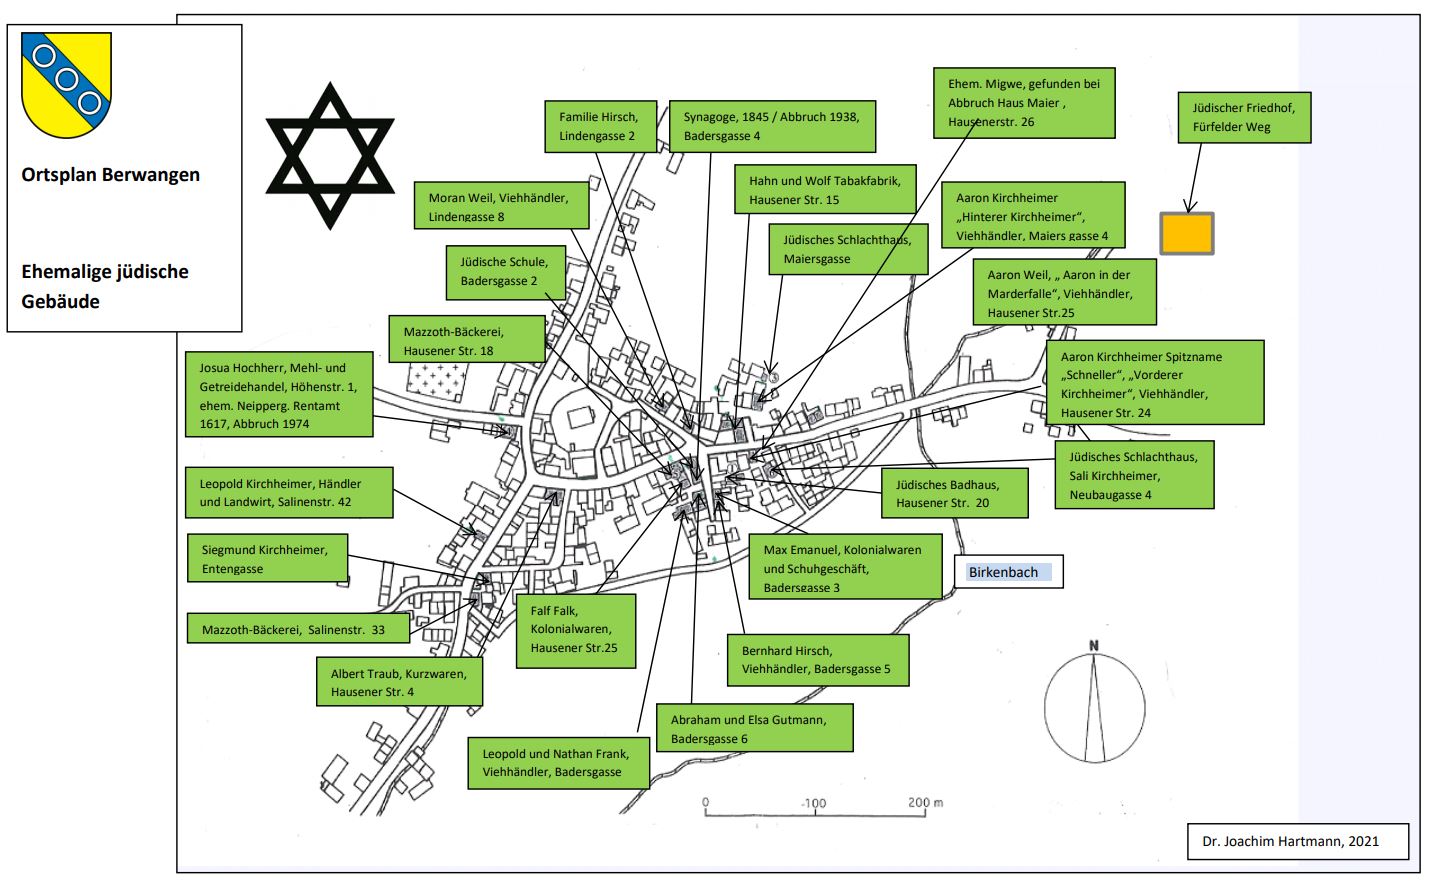  In diesem Plan sind alle im Rundgang beschriebenen ehemaligen Jüdische Gebäude in einer Straßenkarte hinterlegt. Links oben ist das Berwanger Wappen hinterlegt.- Das Bild wird mit Klick vergrößert 